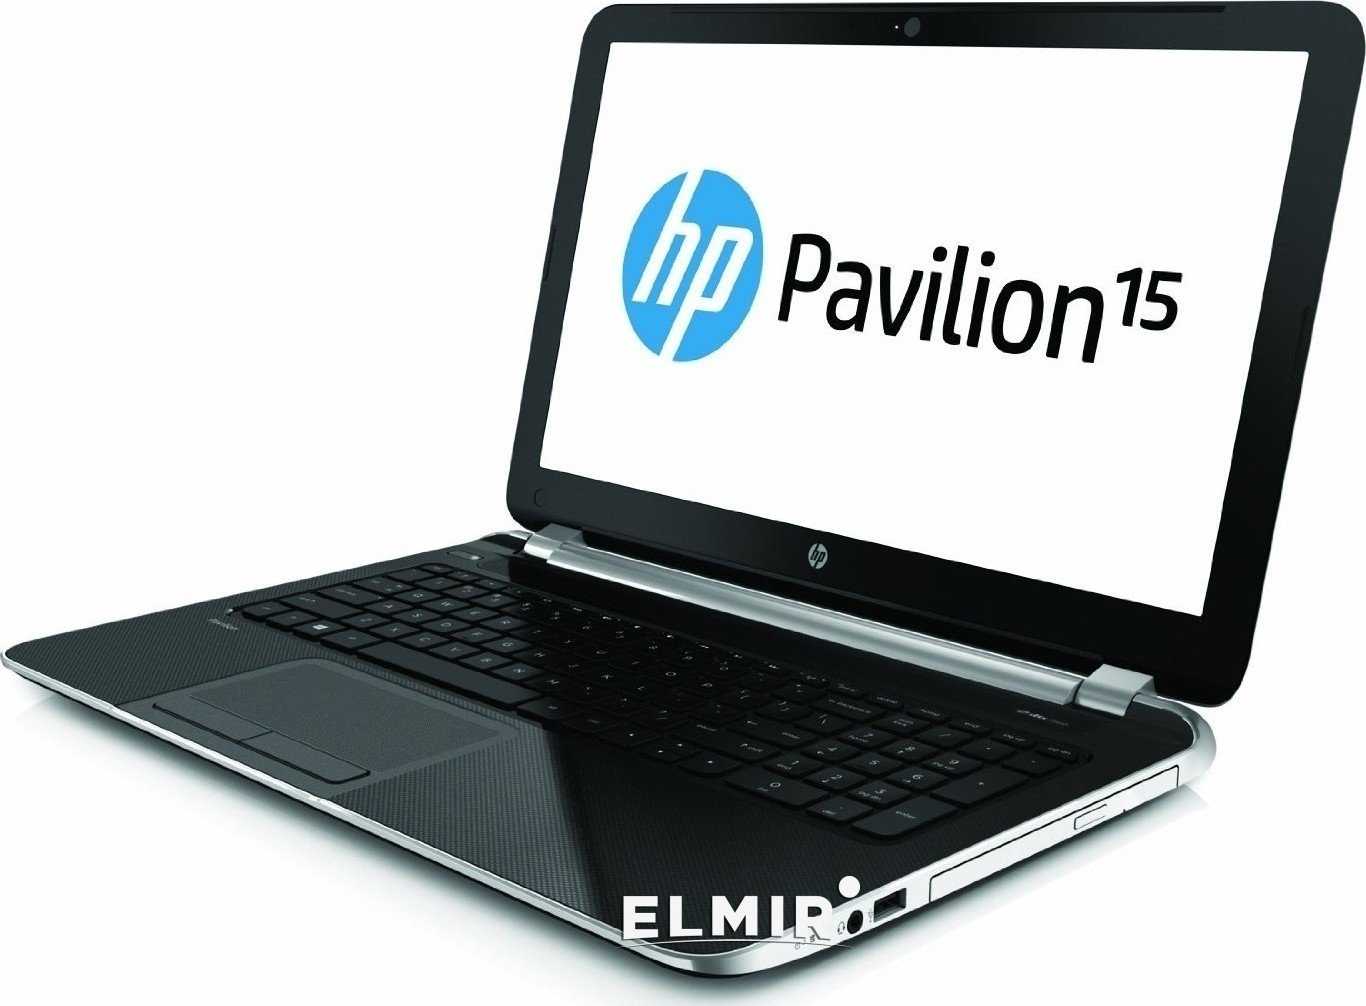 Ноутбук HP Pavilion 15-n029sr (F2U12EA) - подробные характеристики обзоры видео фото Цены в интернет-магазинах где можно купить ноутбук HP Pavilion 15-n029sr (F2U12EA)